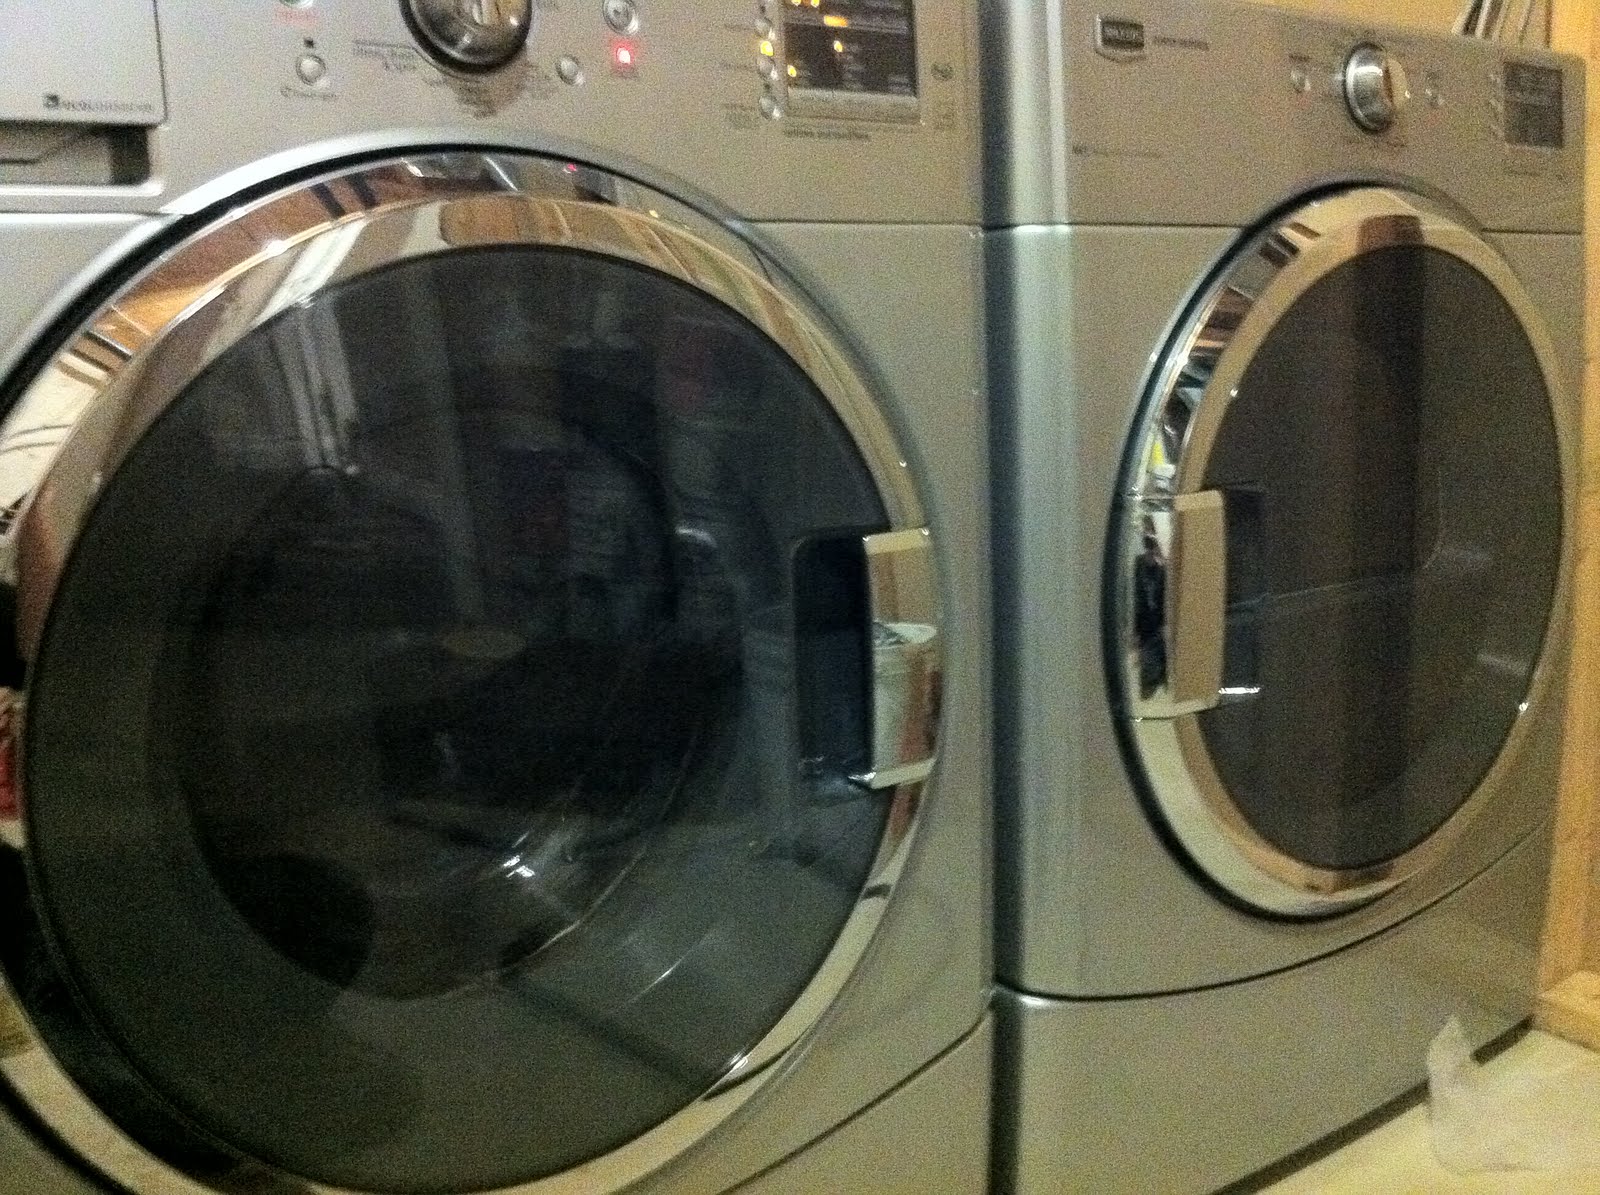 New Dryers